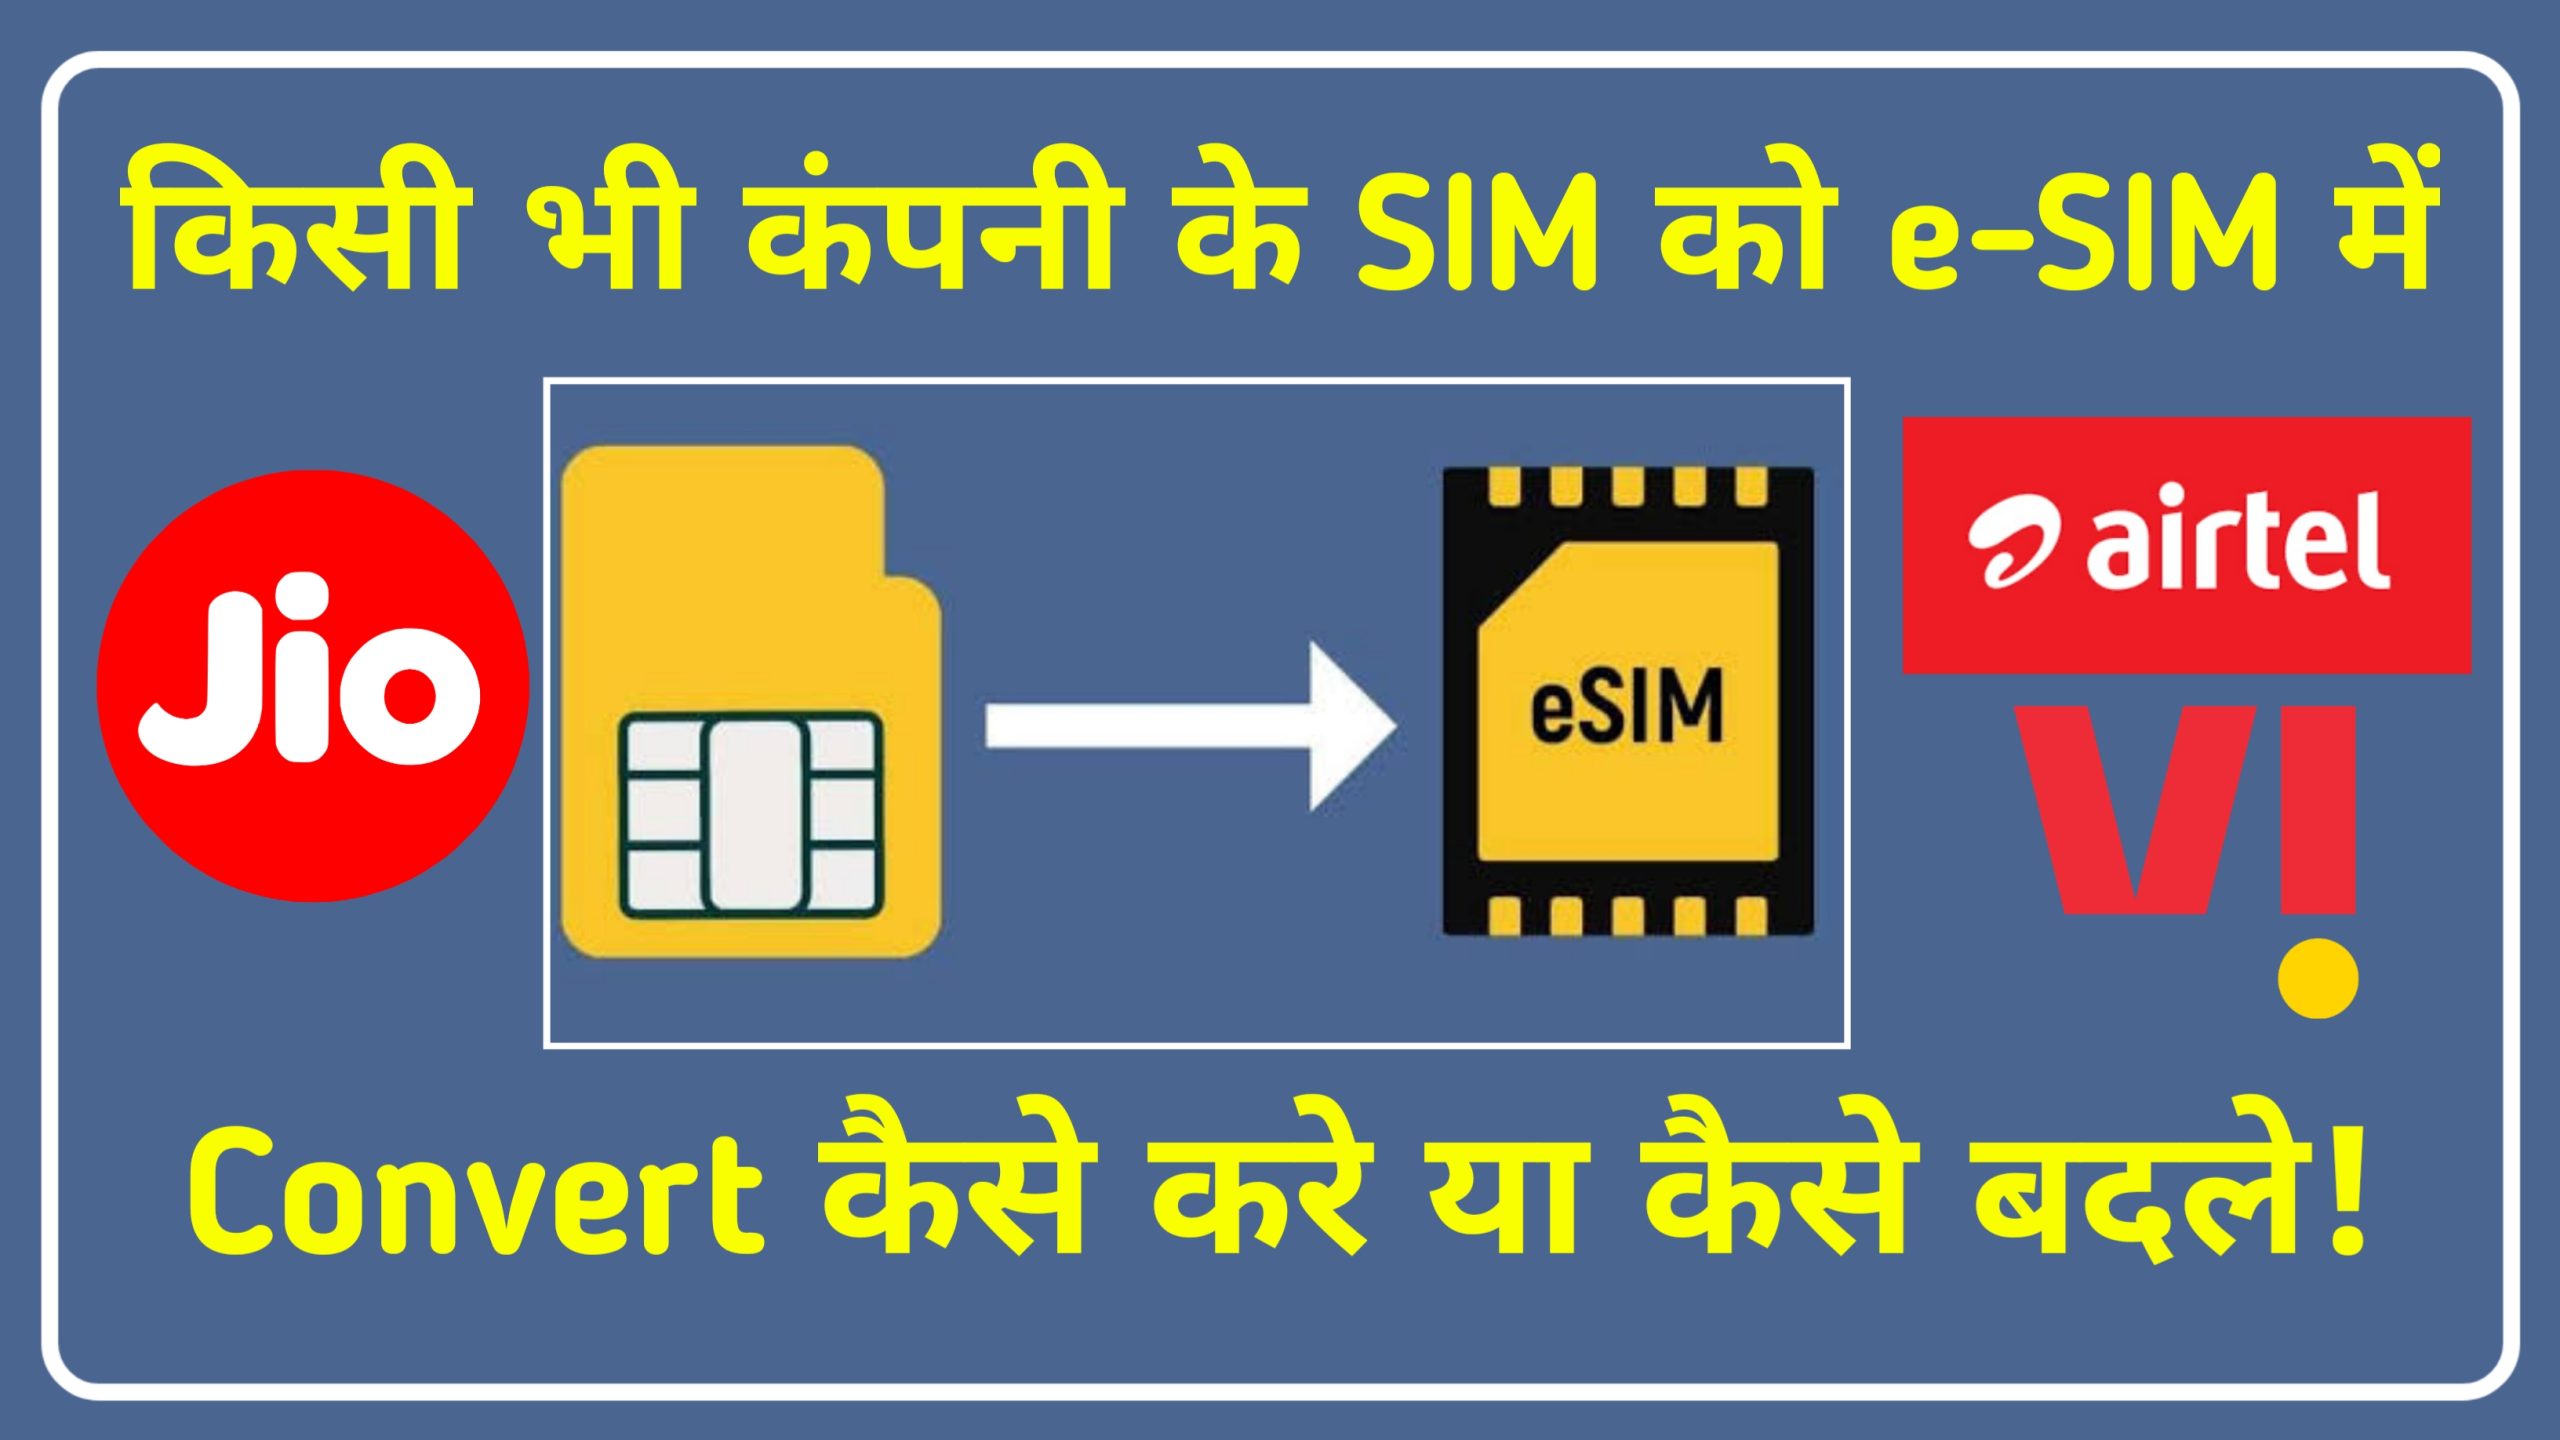 किसी भी कंपनी के SIM को e-SIM मे कैसे बदले-How to Convert Any SIM to e-SIM in Hindi: